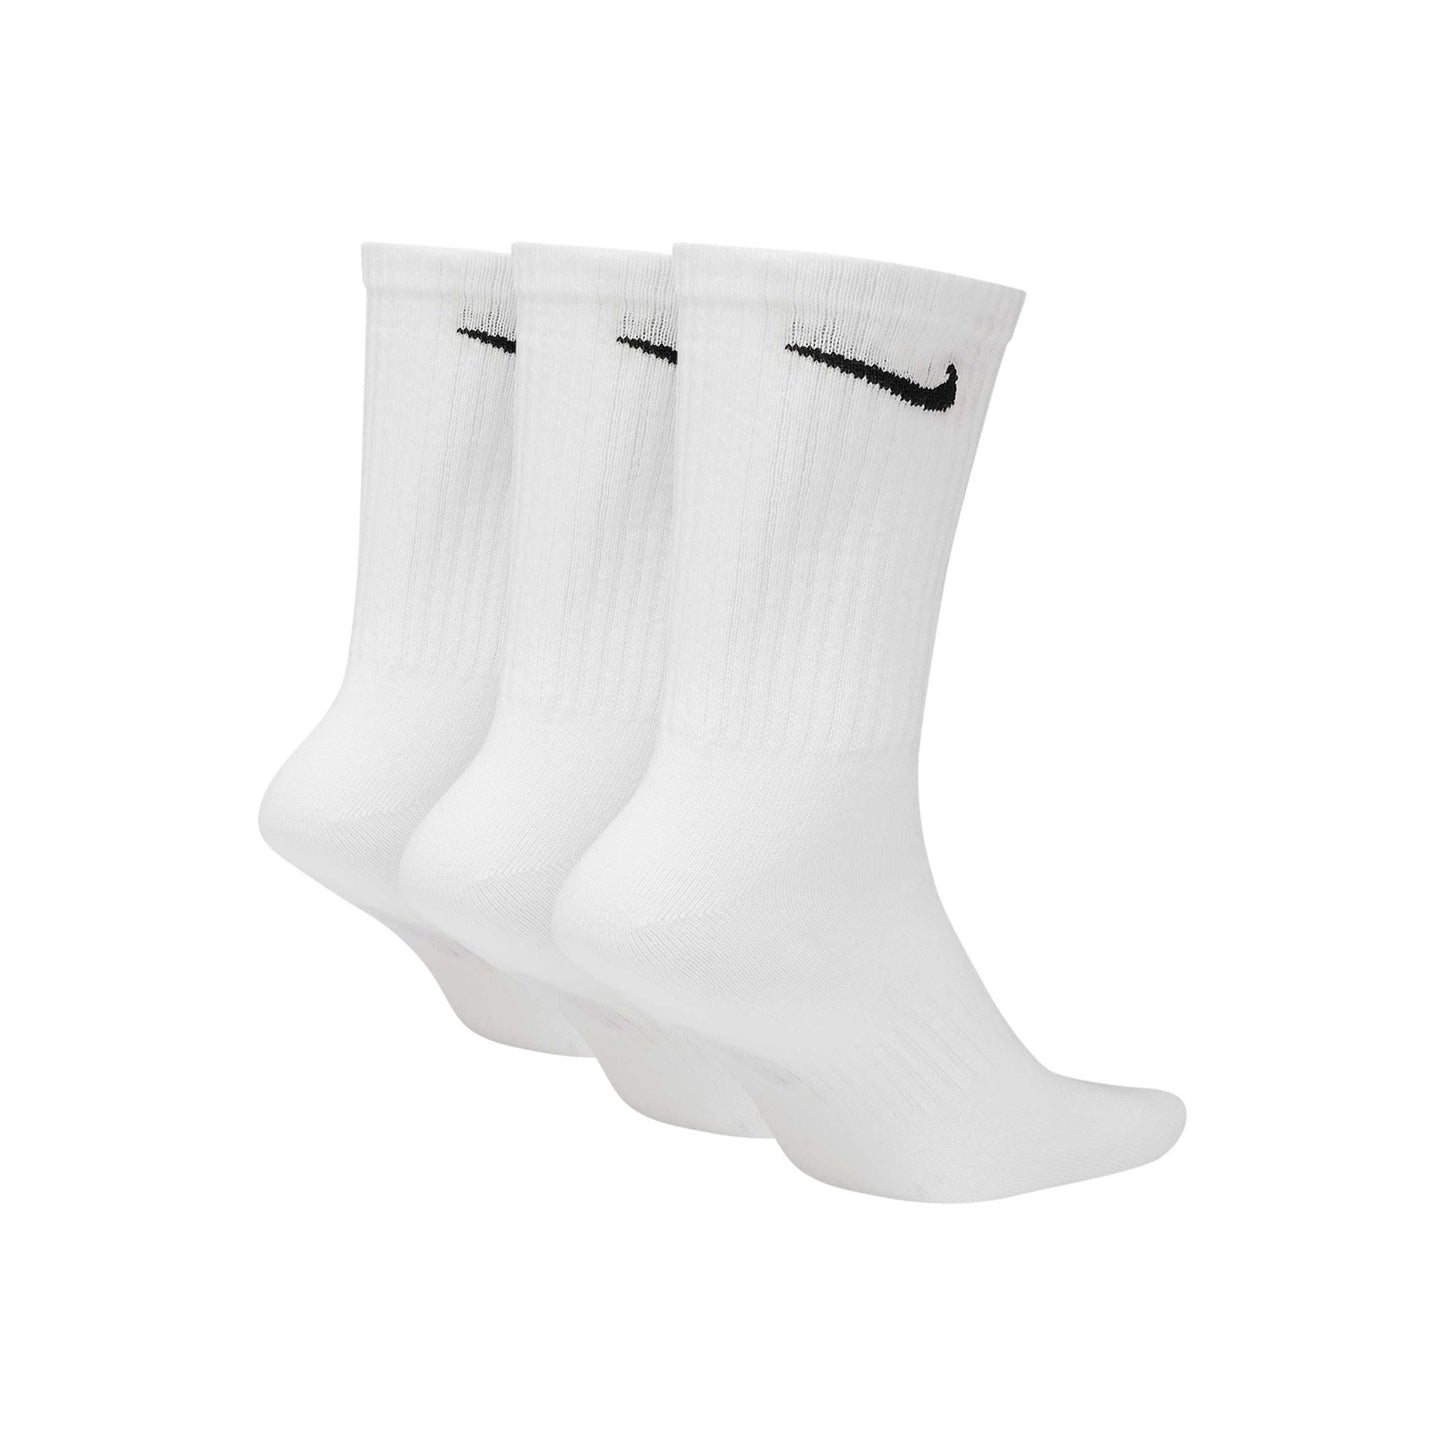 Nike Everyday Lightweight sock, white/black - Tiki Room Skateboards - 2